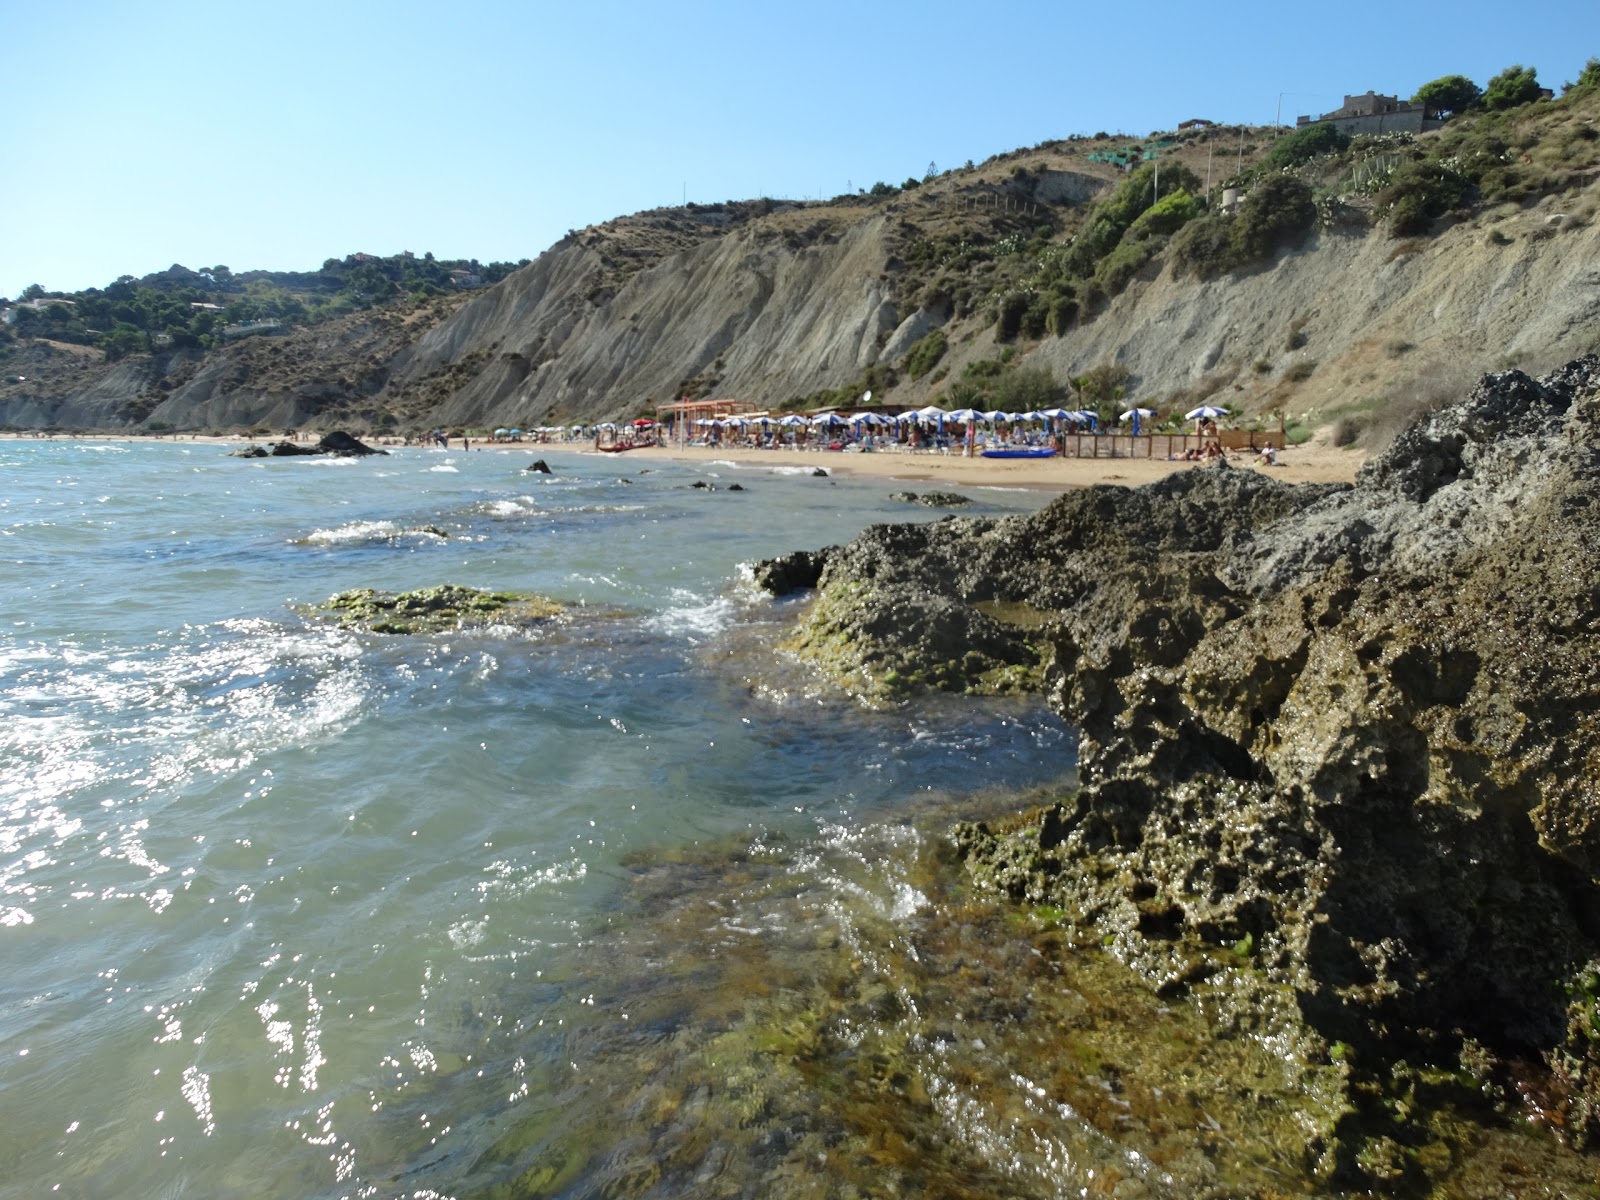 Fotografie cu Marianello beach - locul popular printre cunoscătorii de relaxare